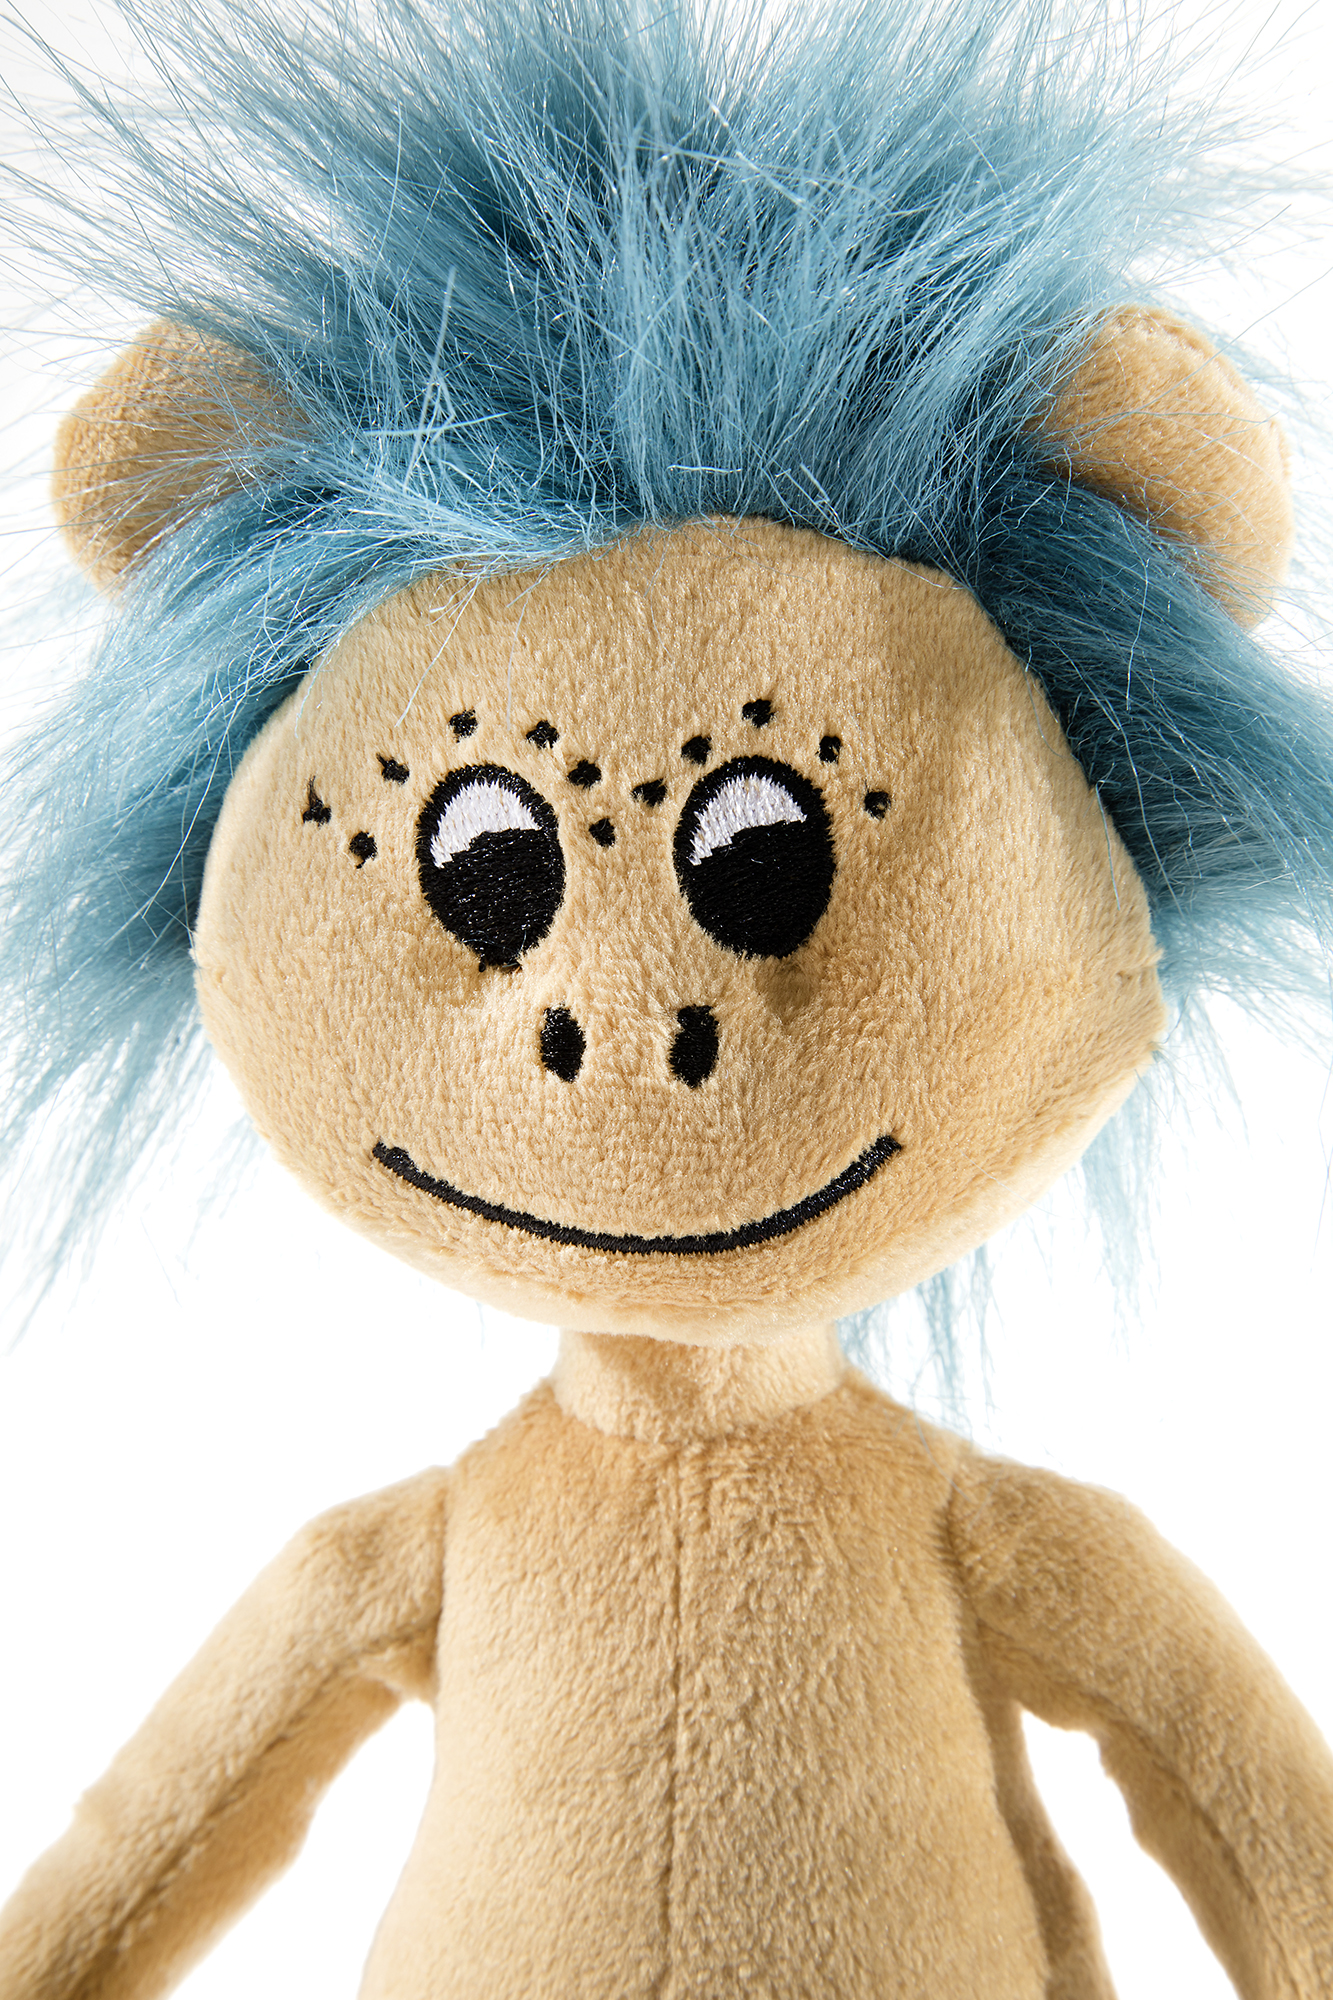 Heunec Plumps Plüschfigur aus der Sandmann Serie mit brauner Hose und blauen Haaren in 30cm Größe